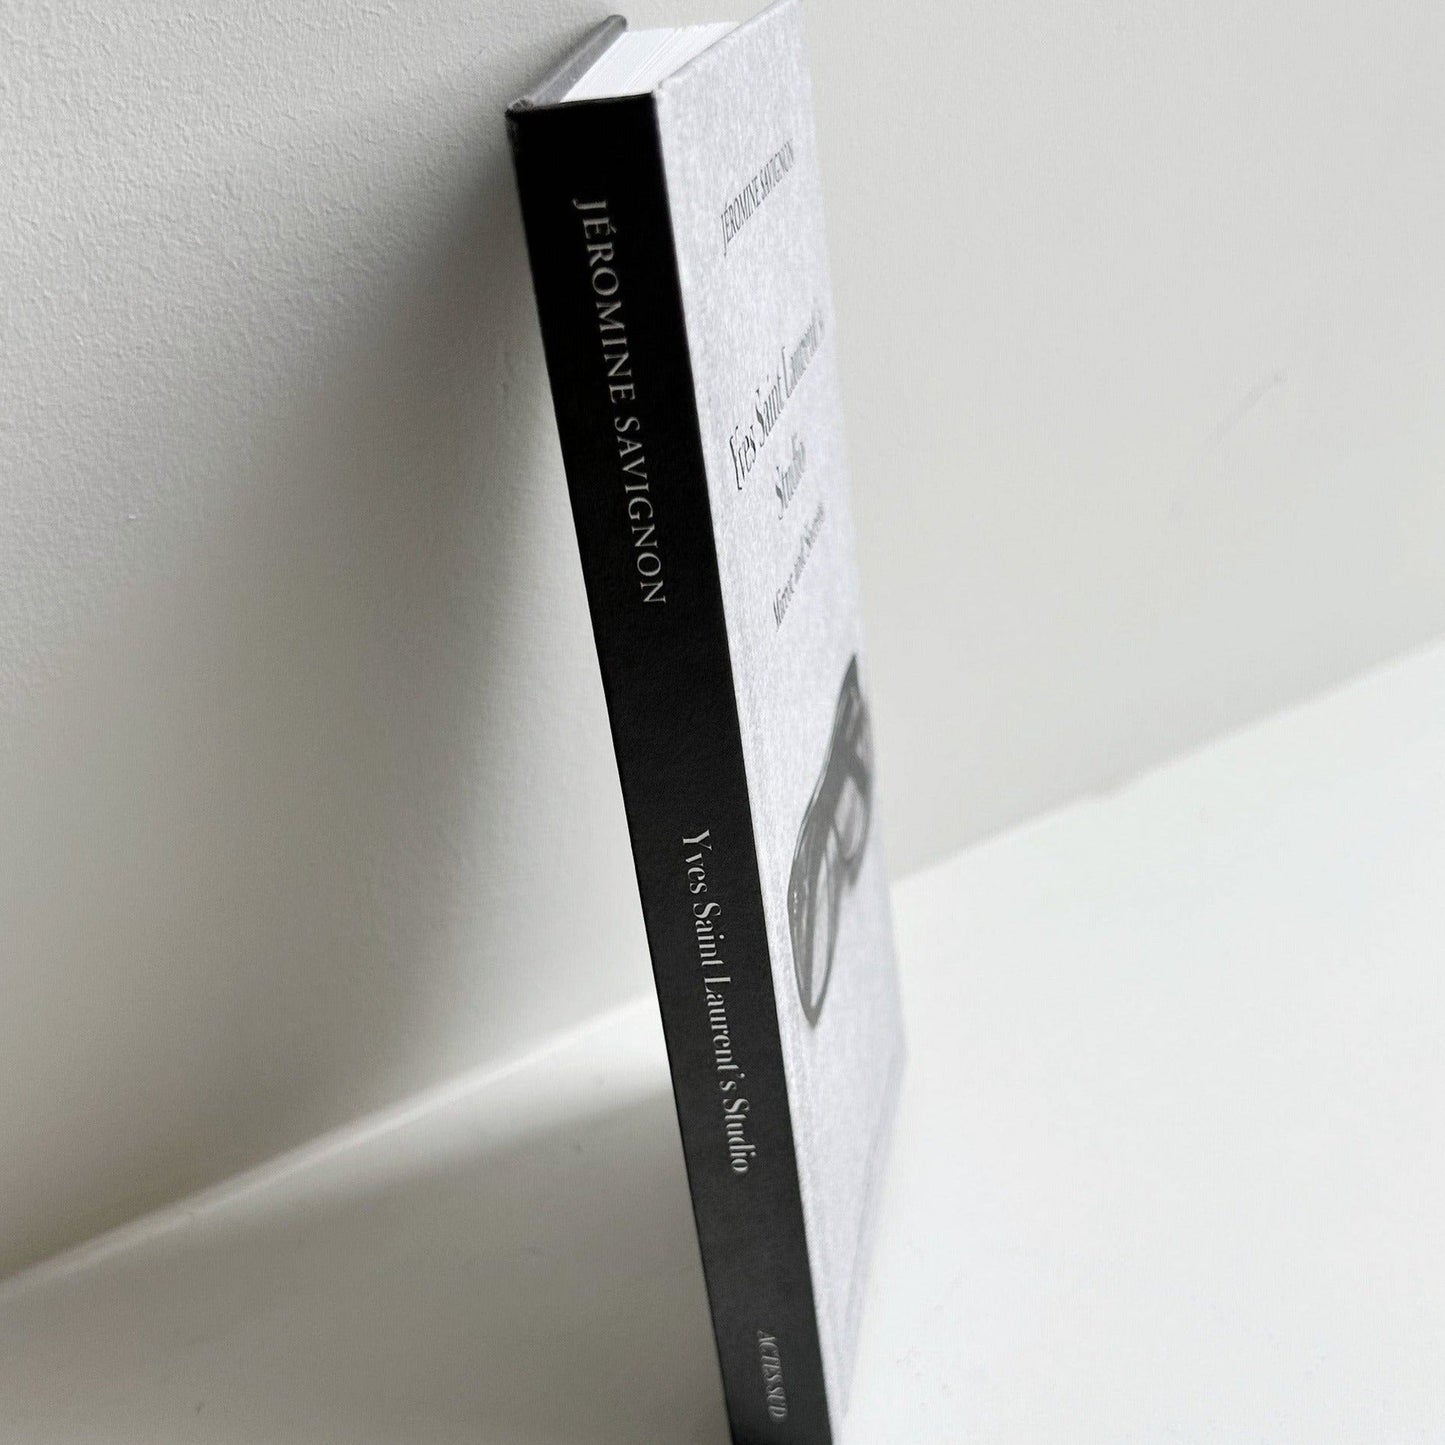 Yves Saint Laurent’s Studio: Mirror and Secrets Books INGRAM   